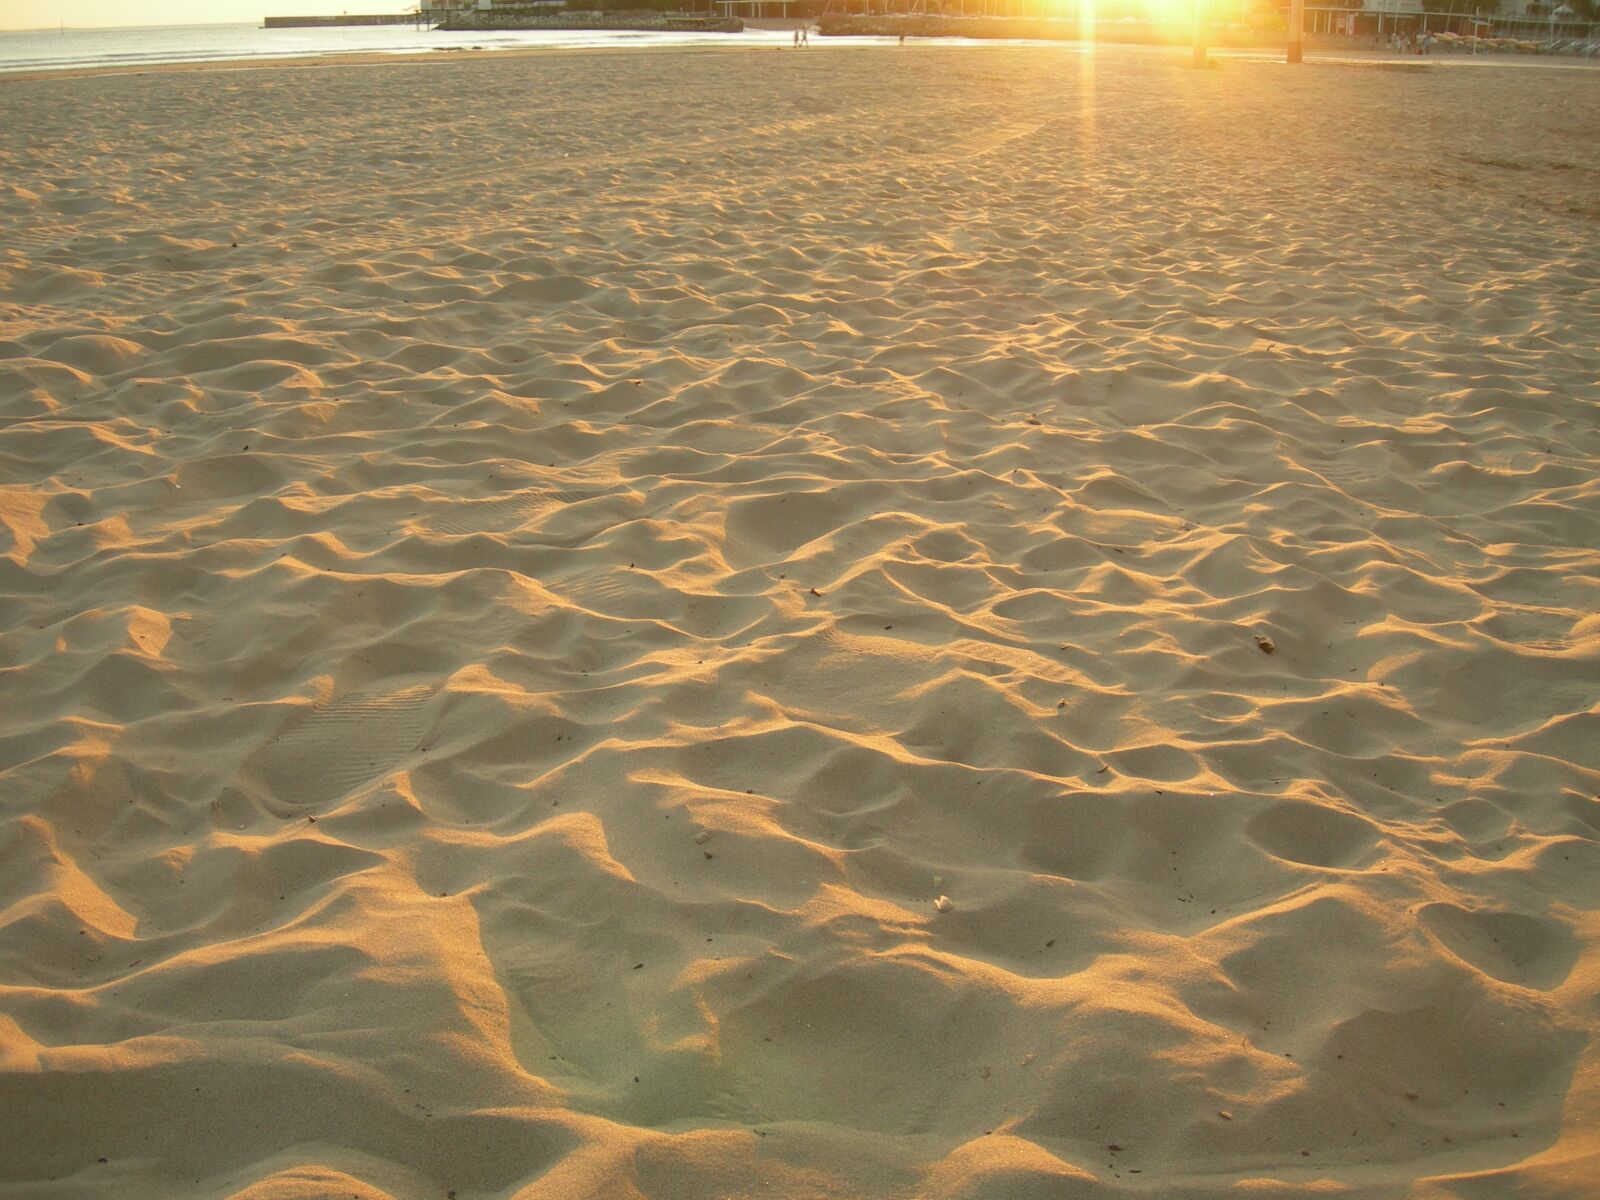 Nikon E7600 sample photo. Sandy beach, sunset, dusk photography